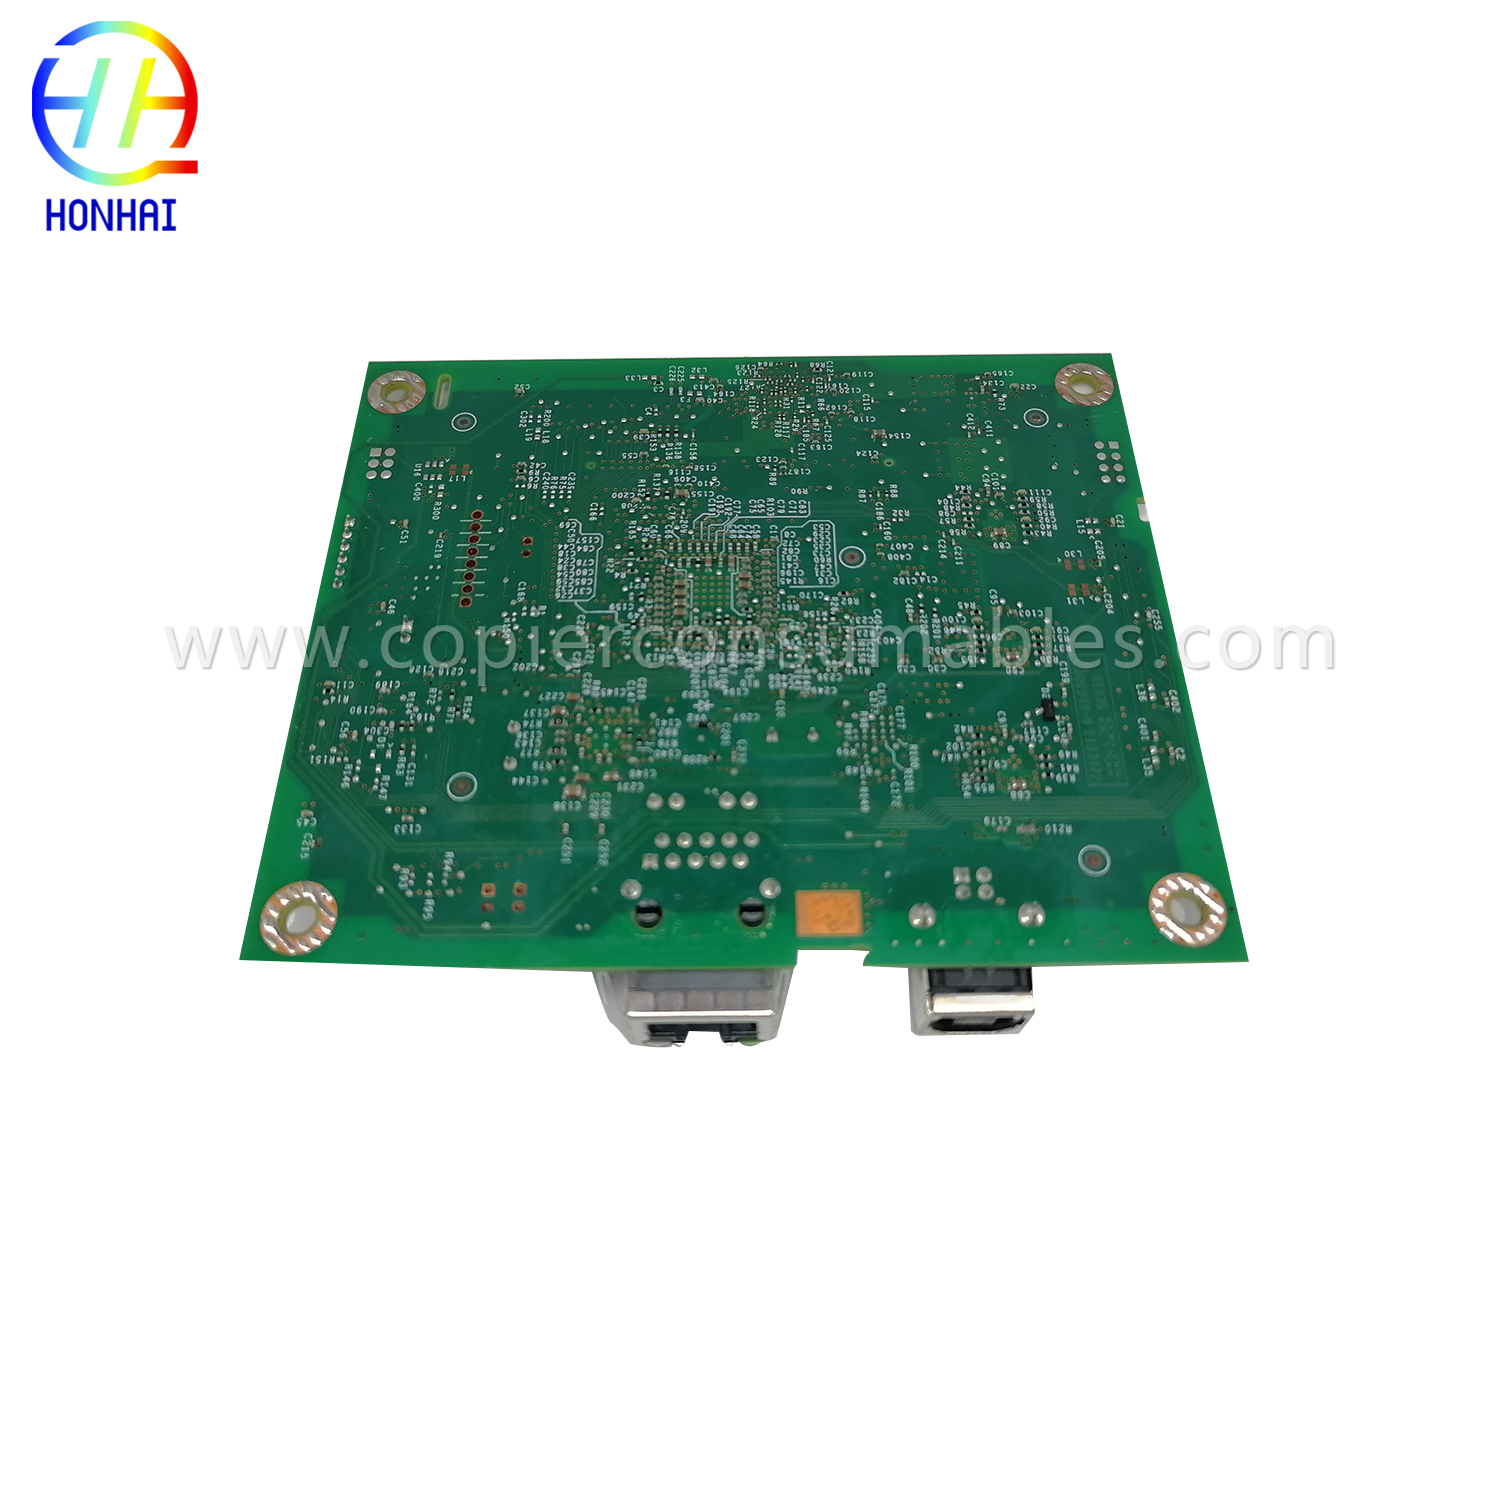 Formatter Board rau HP CF149-60001 LaserJet Pro 400 M401 (5) 拷贝